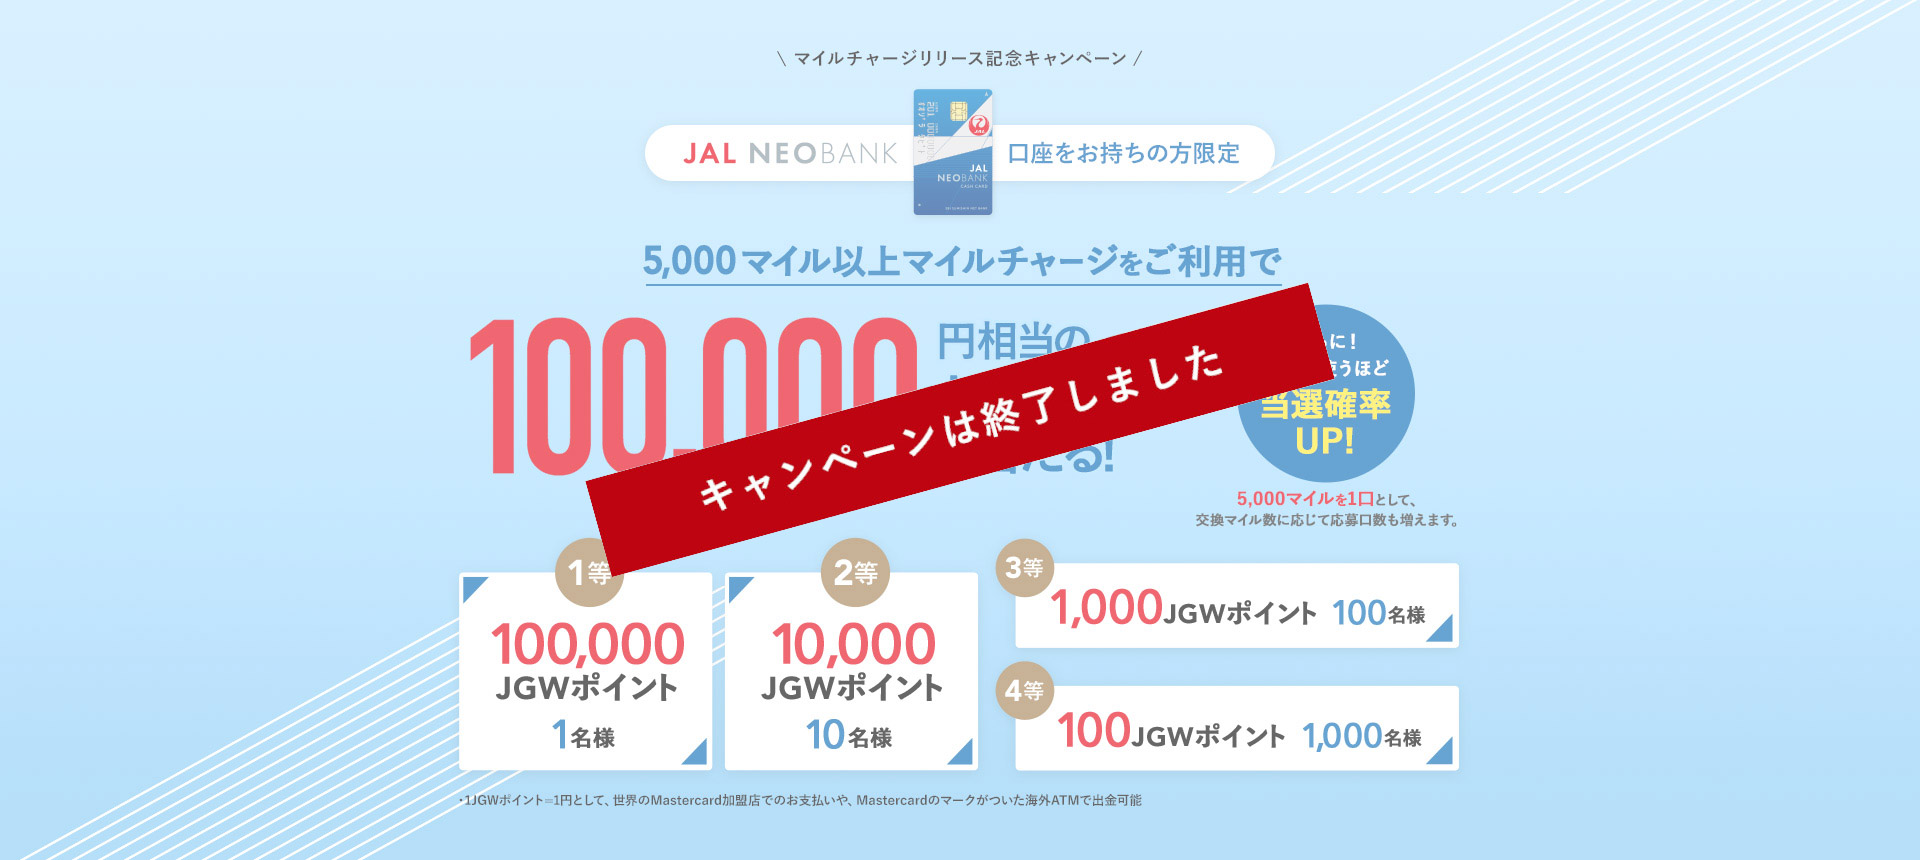 マイルチャージサービスリリース記念キャンペーン JAL NEOBANK口座をお持ちの方限定 5,000マイル以上マイルチャージサービスをご利用で10,000相当のJGWポイントが当たる！1等 100,000 JGWポイント 1名 2等 10,000 JGWポイント 10名 3等 1,000 JGWポイント 100名 4等 100JGWポイント 1,000名 1JGWポイント=1円として、世界のMastercard加盟店でのお支払いや、Mastercardのマークがついた海外ATMで出金可能 5,000マイルを1口として、交換マイル数に応じて応募口数も増えます。